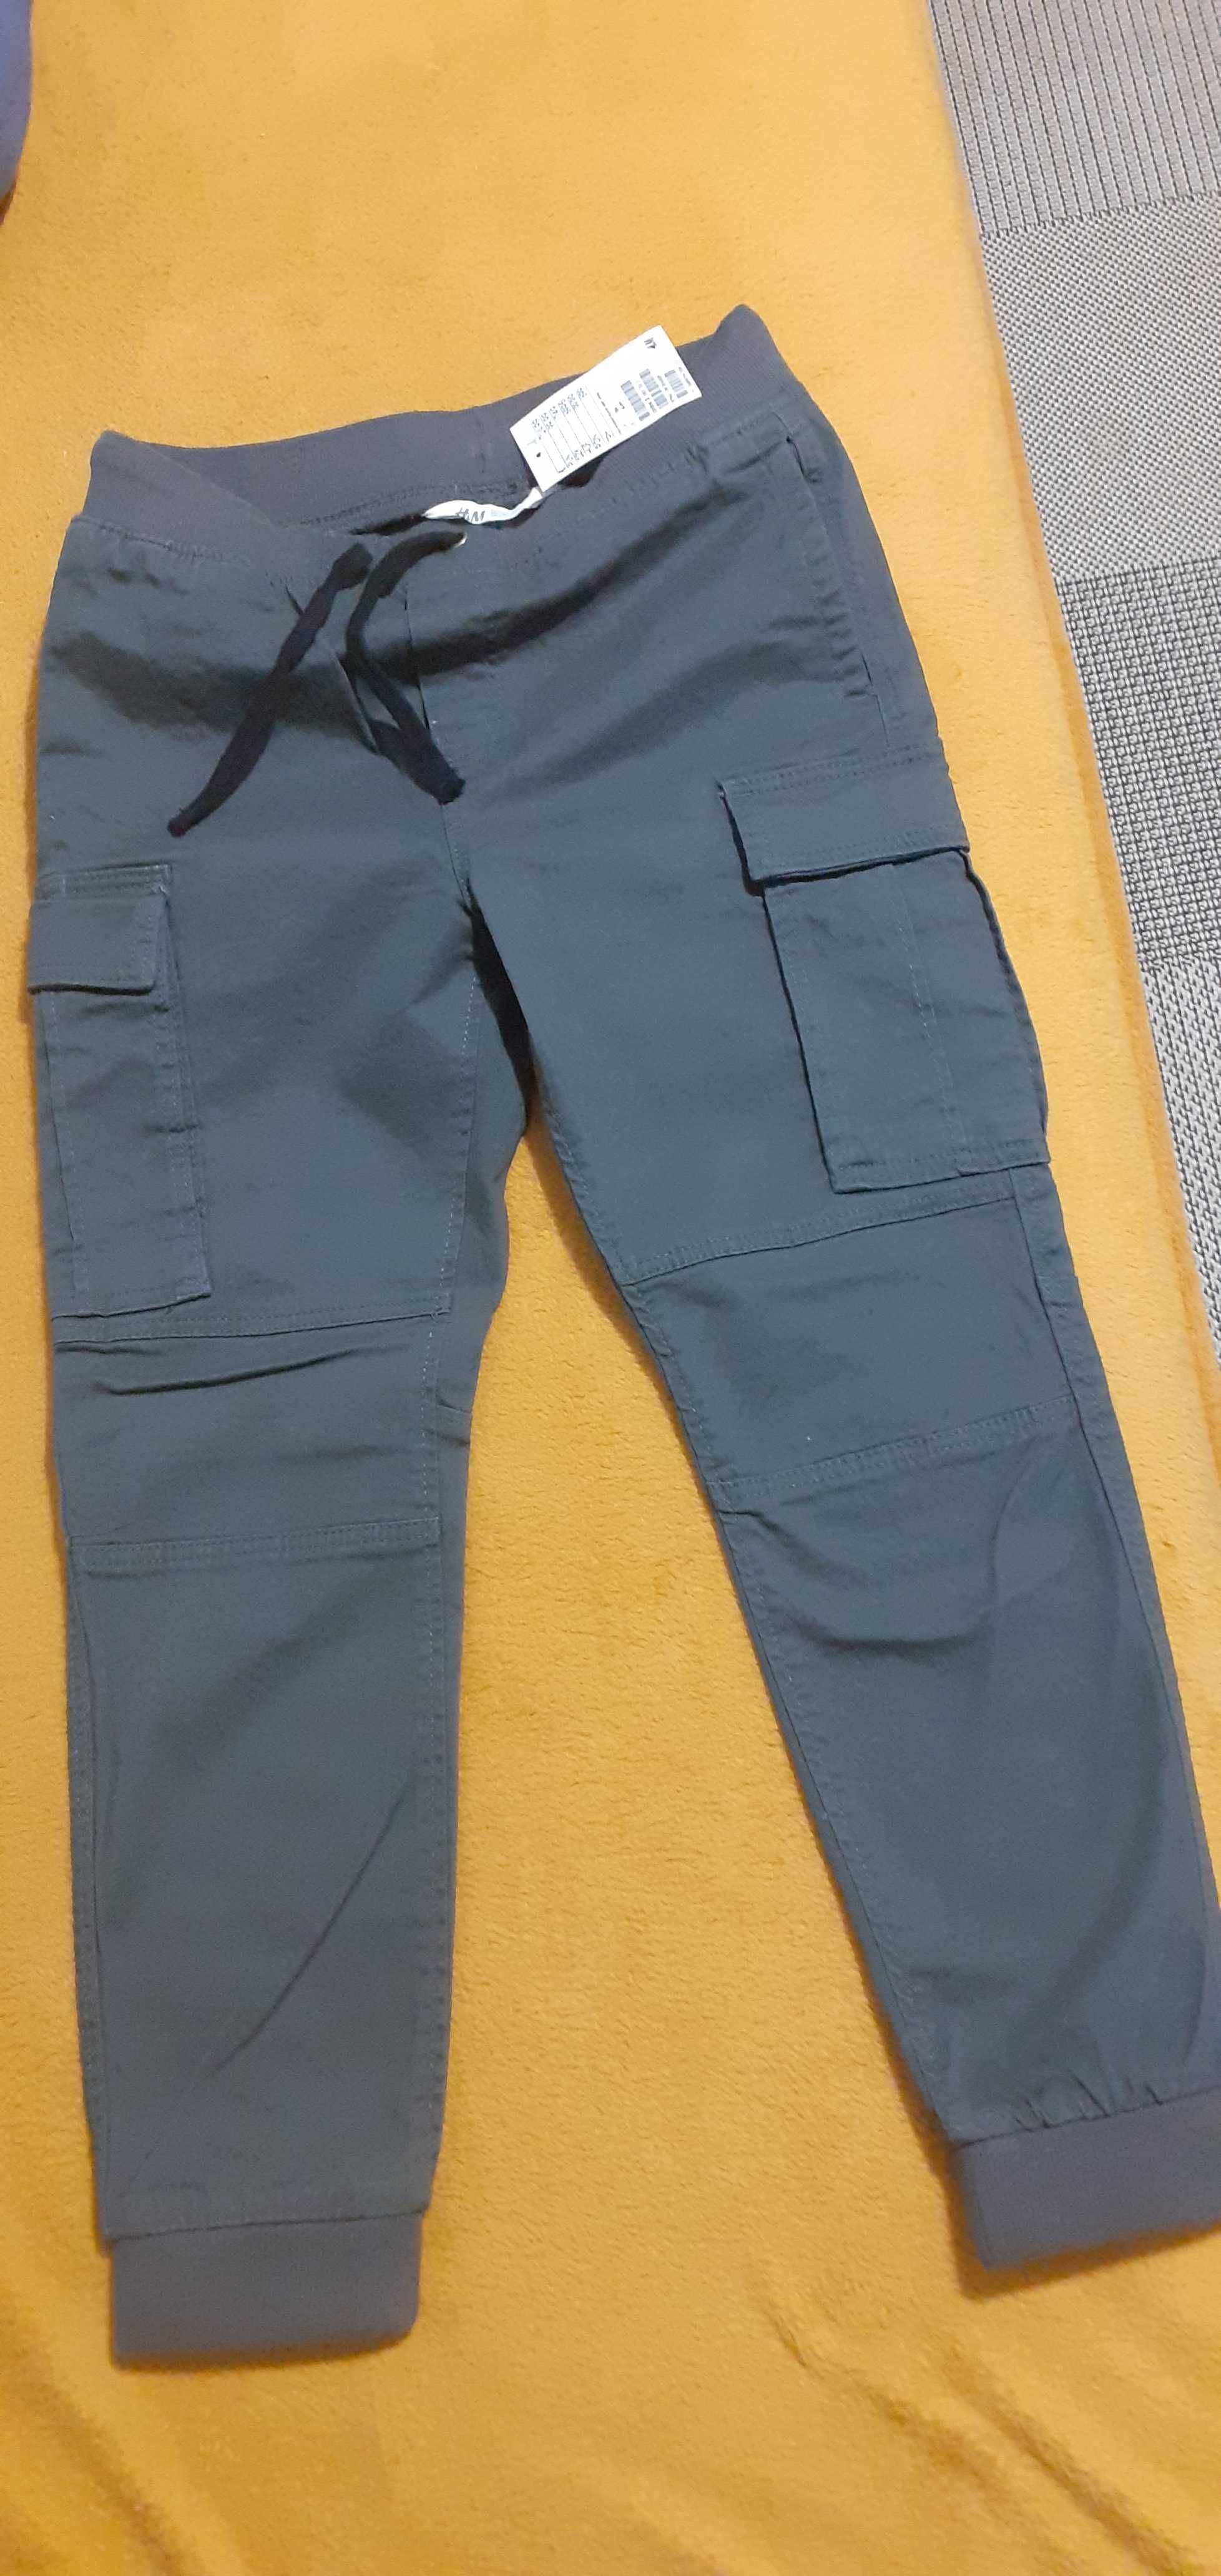 Spodnie chłopięce -bojówki H&M  rozm.134 cm chłopak